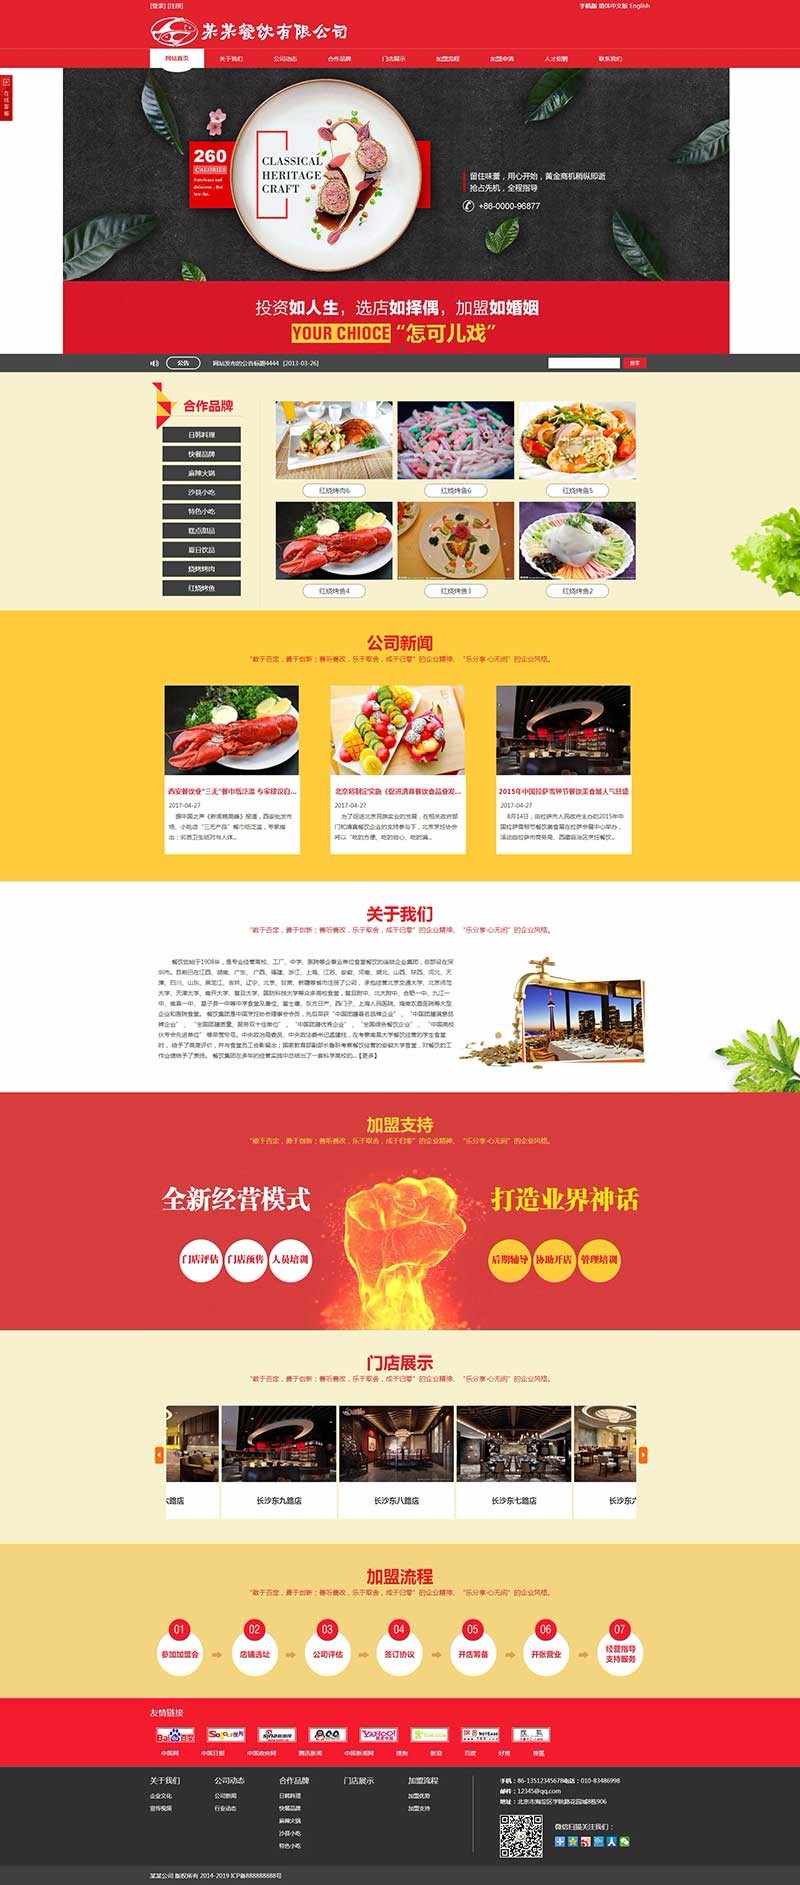 红色食品餐饮类网站源码饭店小吃美食招商加盟培训公司网站模板三合一网站建设